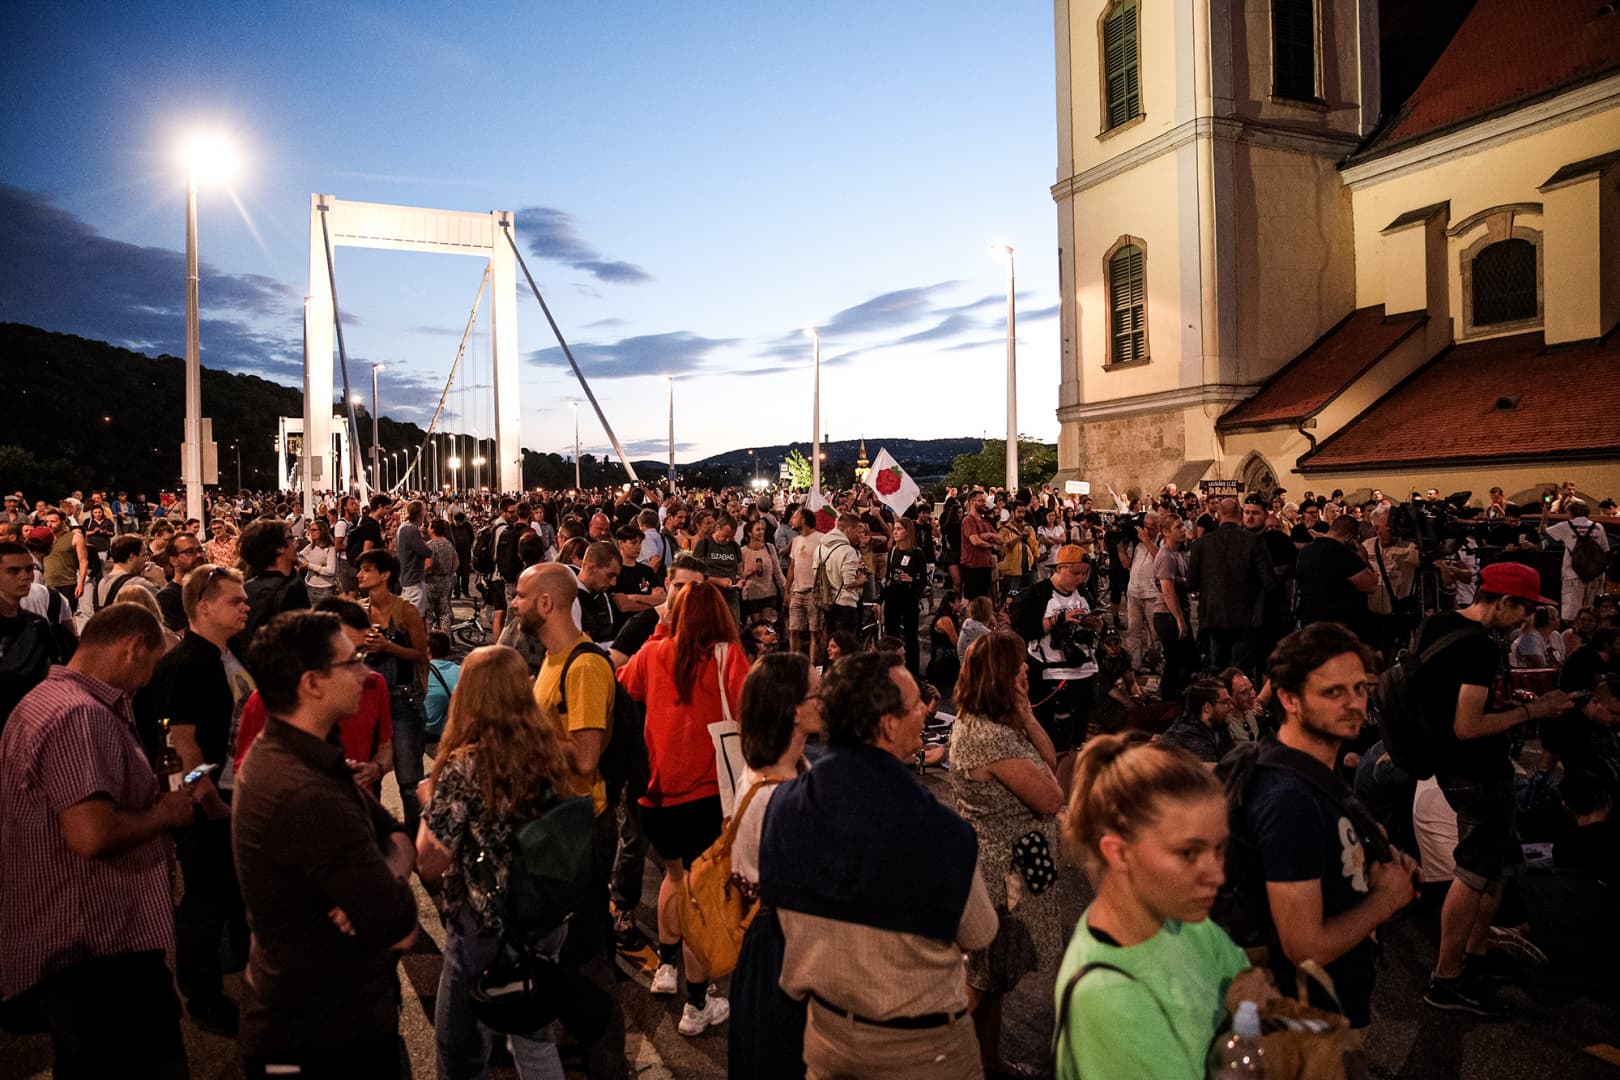 Negyedik napja foglalnak el Budapesten hidakat a tüntetők